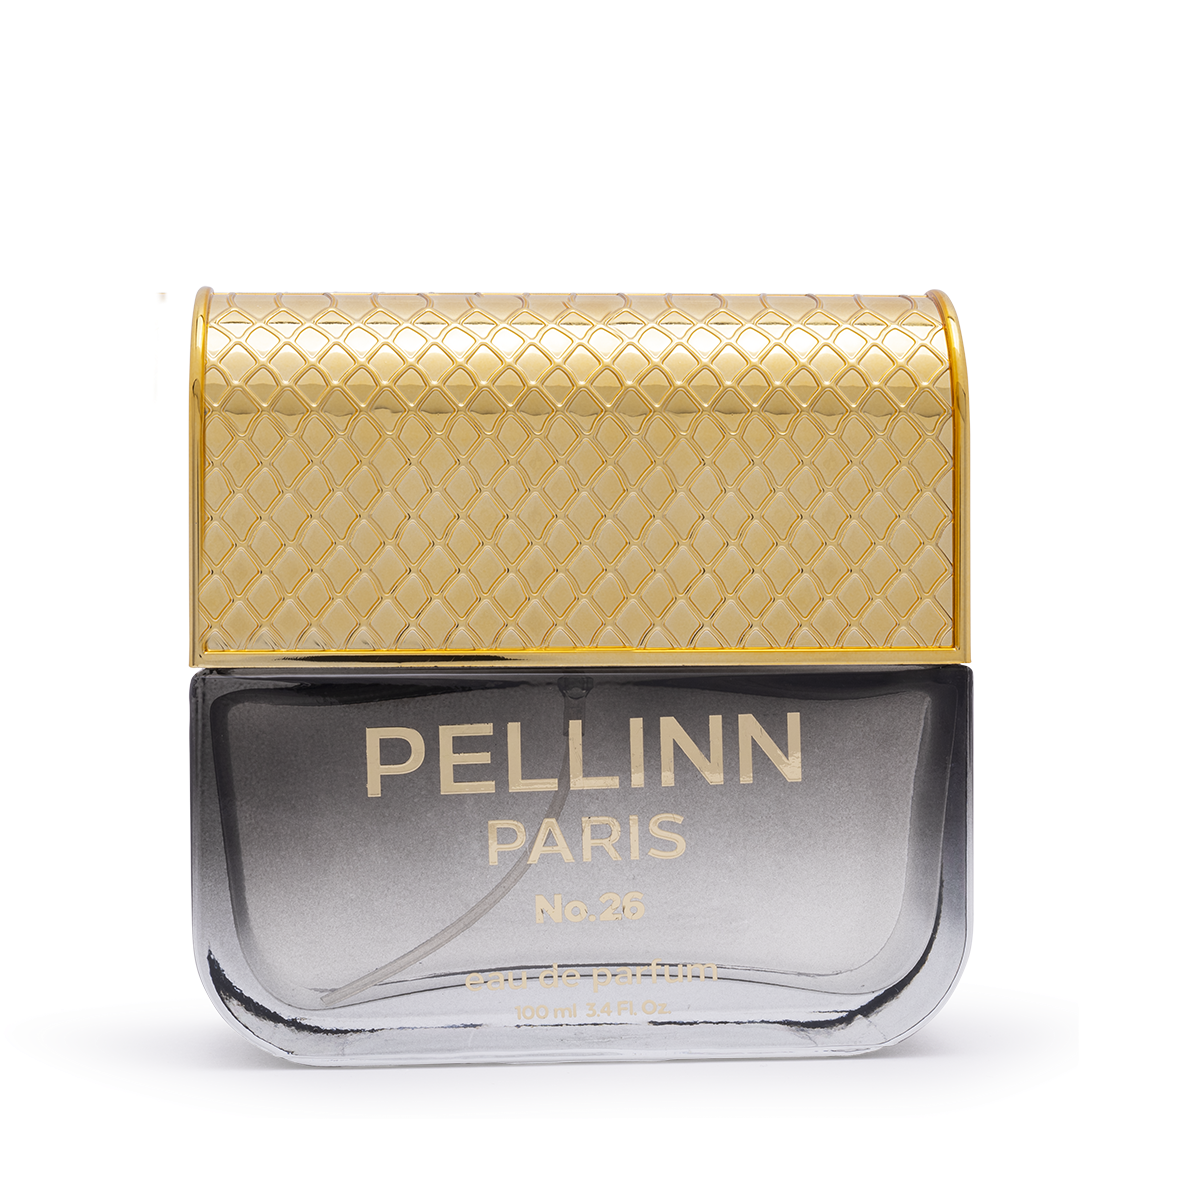 Pellinn Paris No.26 EDP 100 ml  Pellinn Paris Parfüm